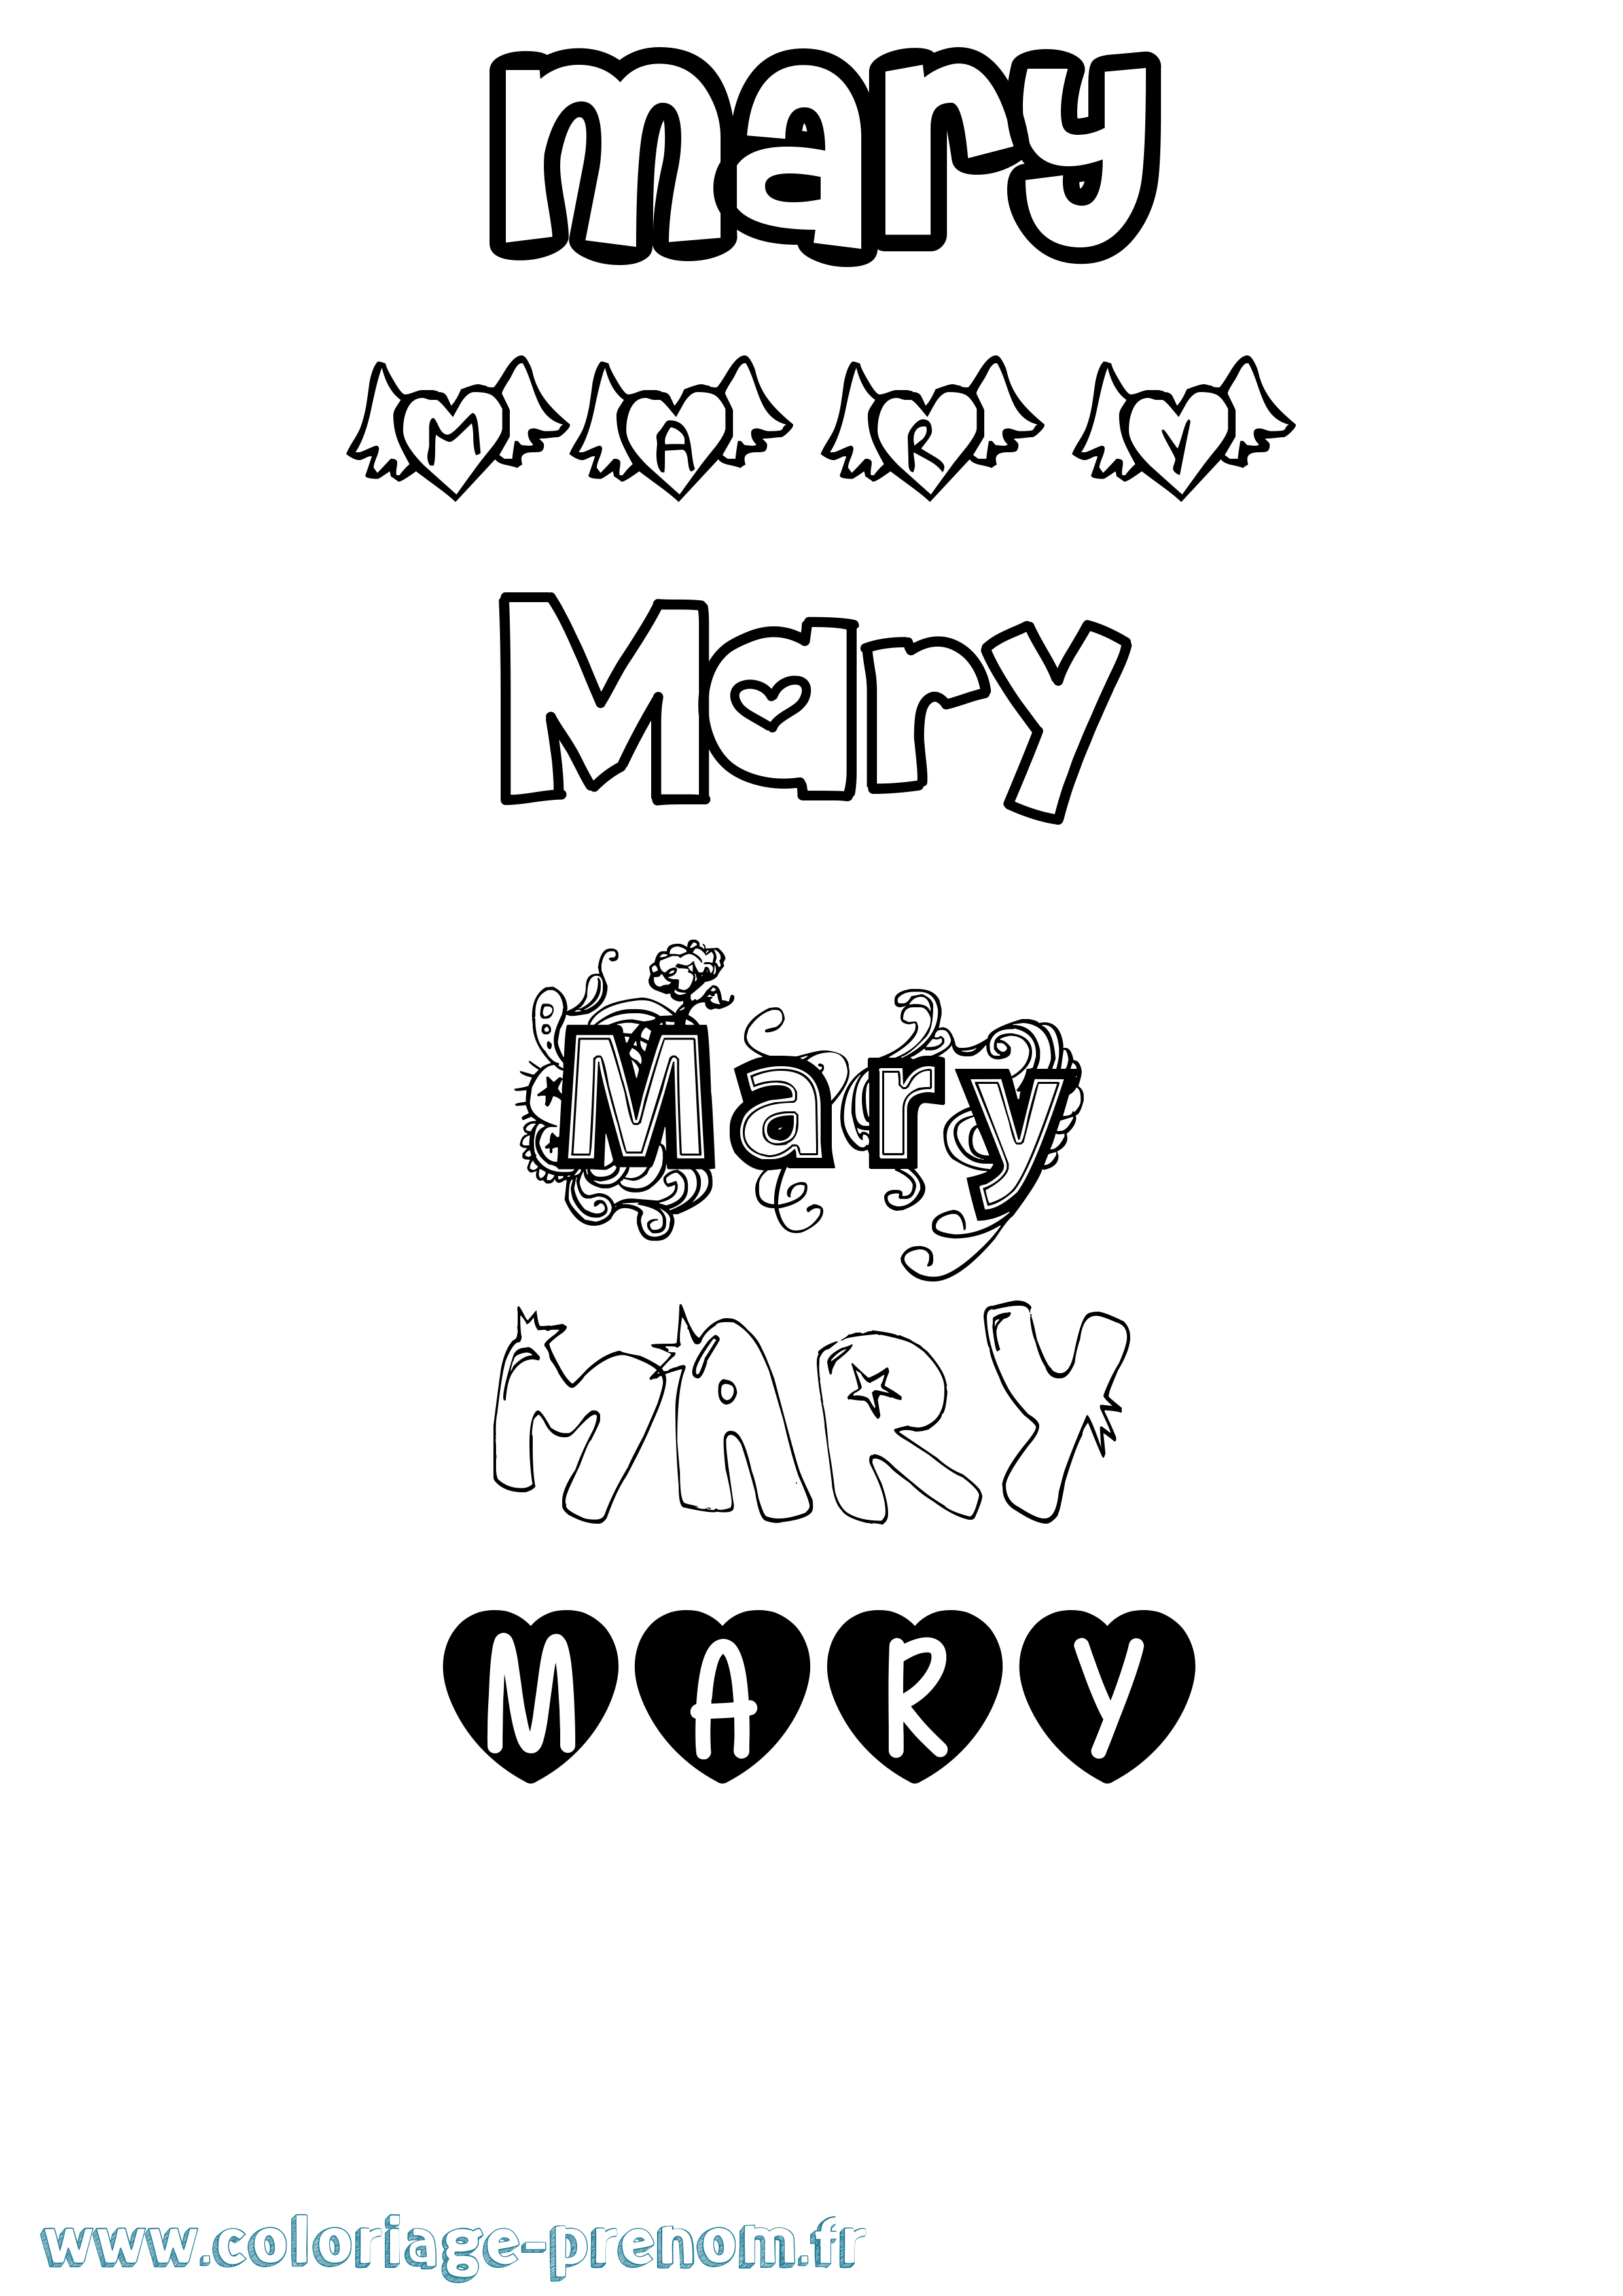 Coloriage prénom Mary Girly